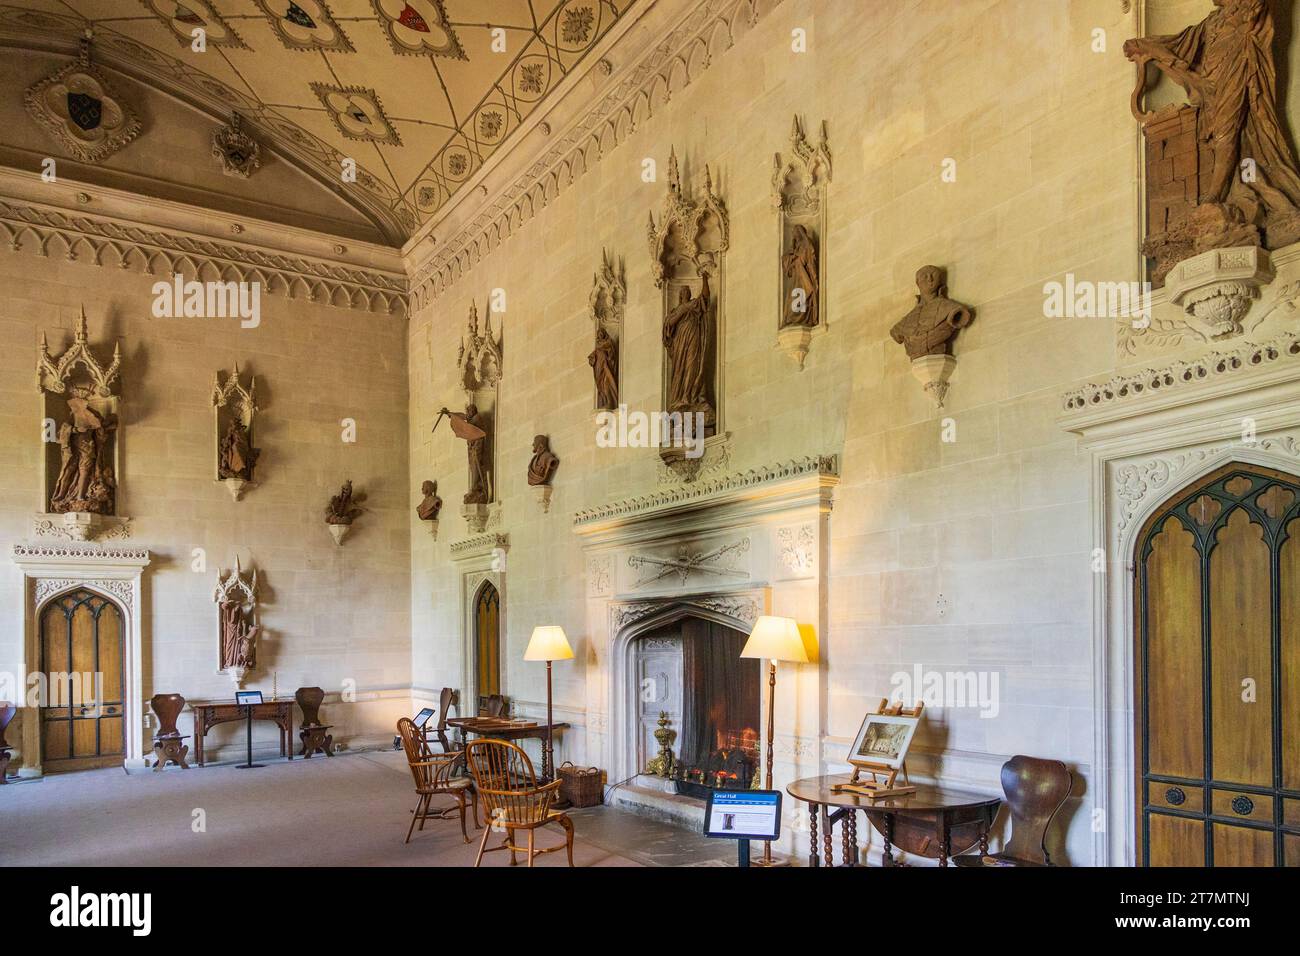 Un'impressionante esposizione di statue di terracotta adornano le pareti della sala grande presso l'Abbazia di Lacock, Wiltshire, Inghilterra, Regno Unito Foto Stock